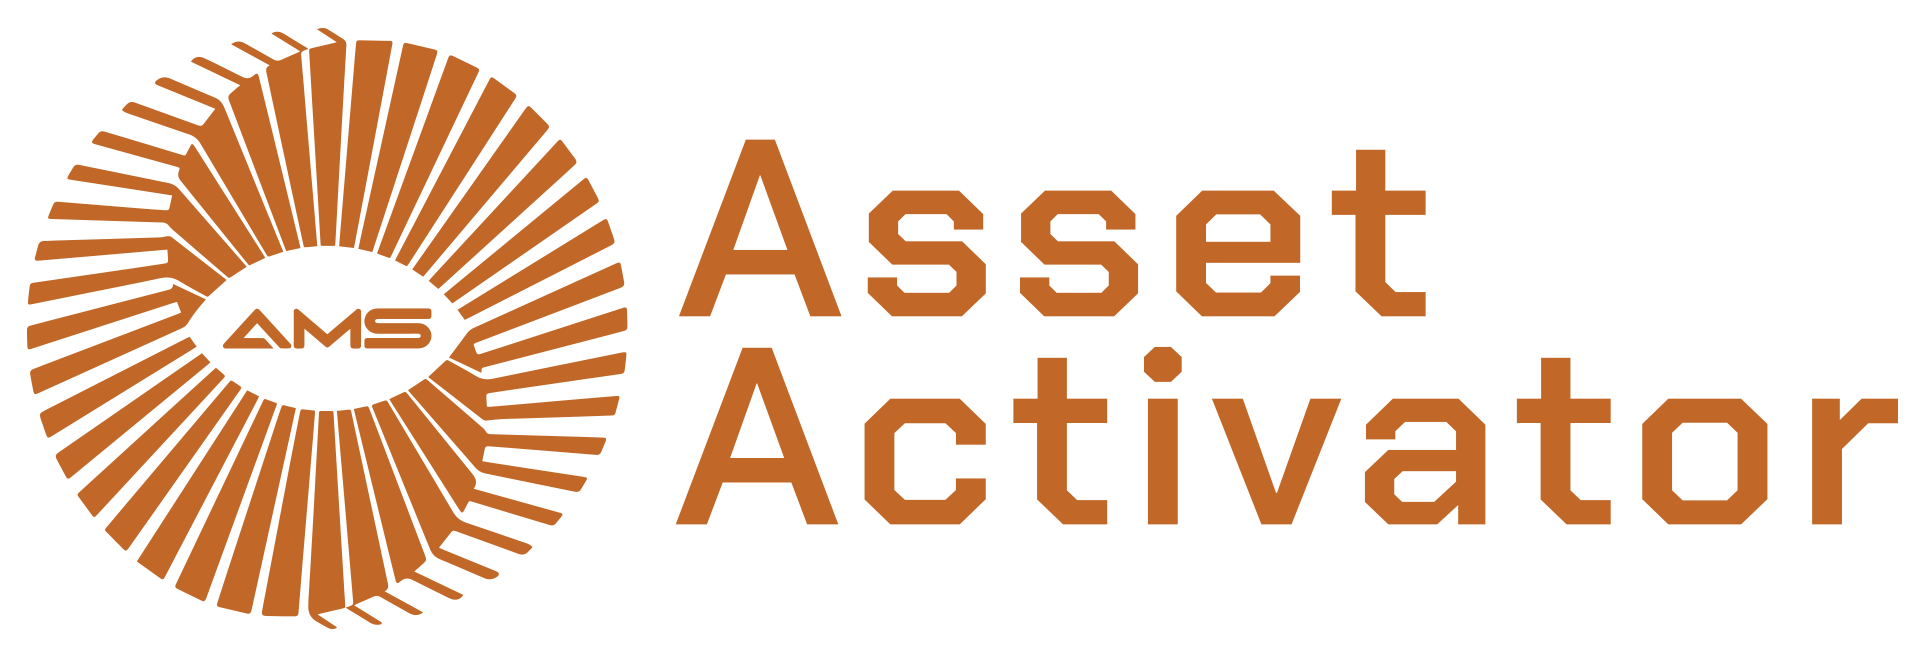 Asset Activator